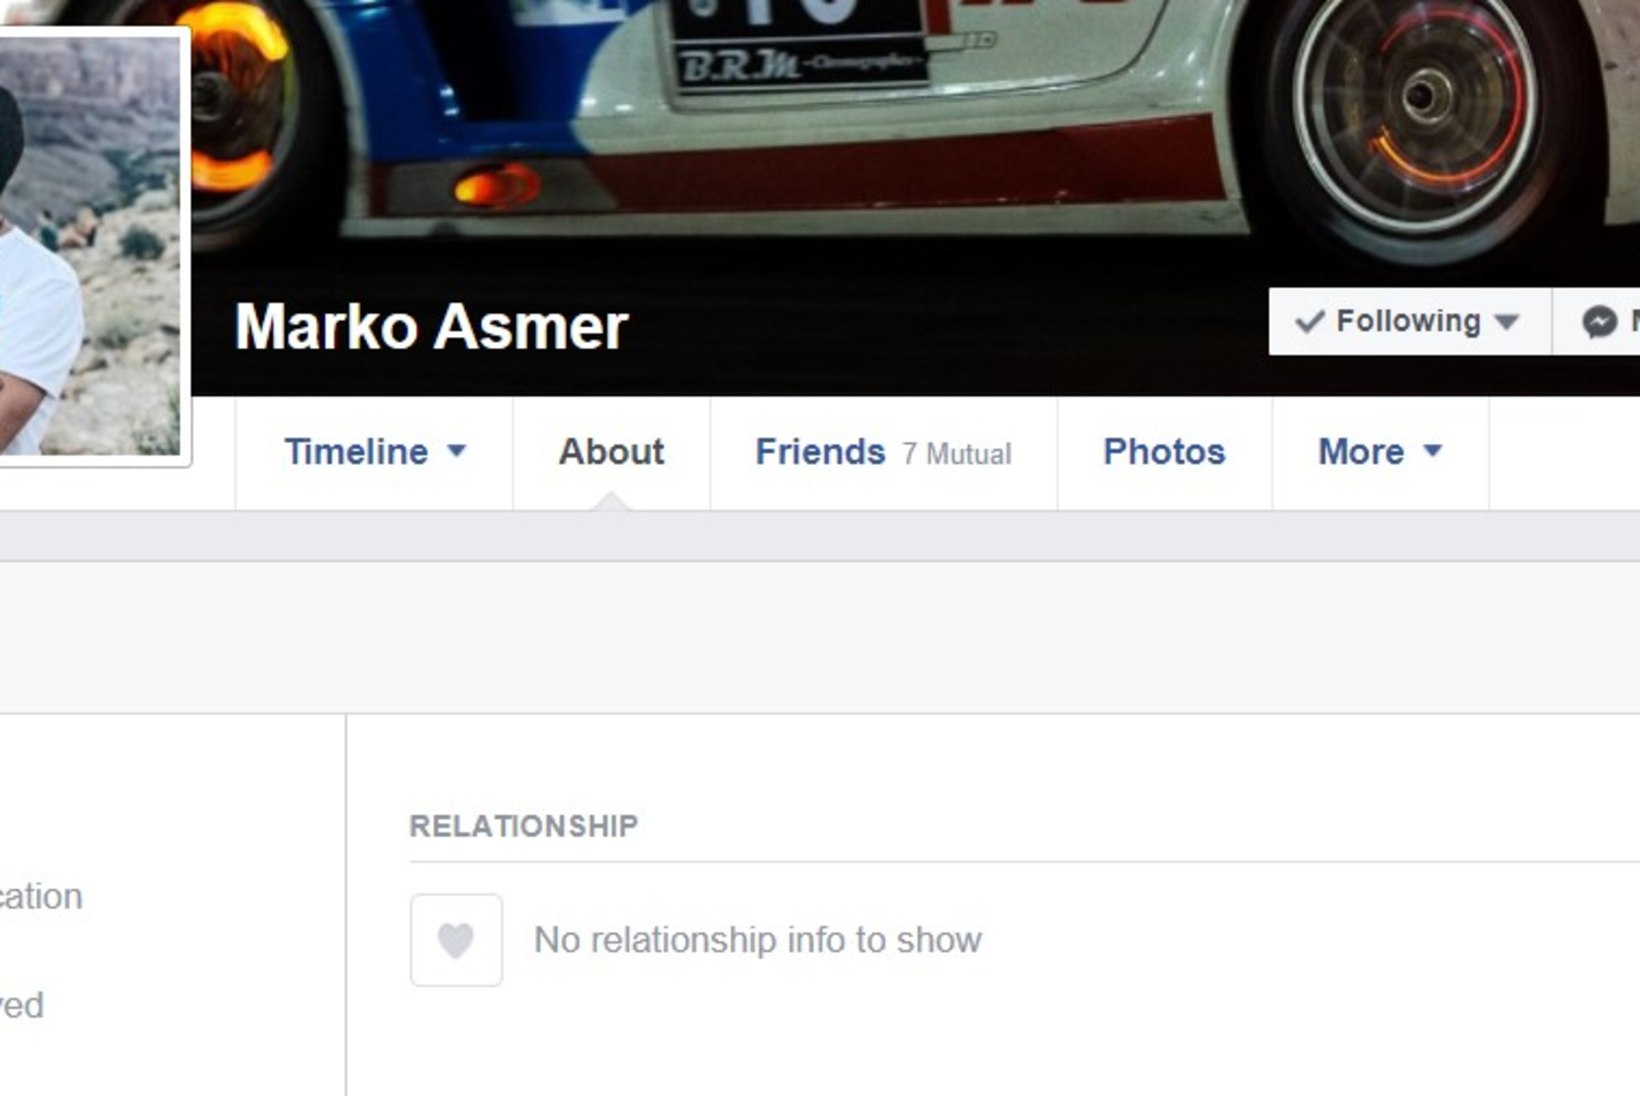 Vormelisõitja Marko Asmer vedas kõiki uue suhtega ninapidi